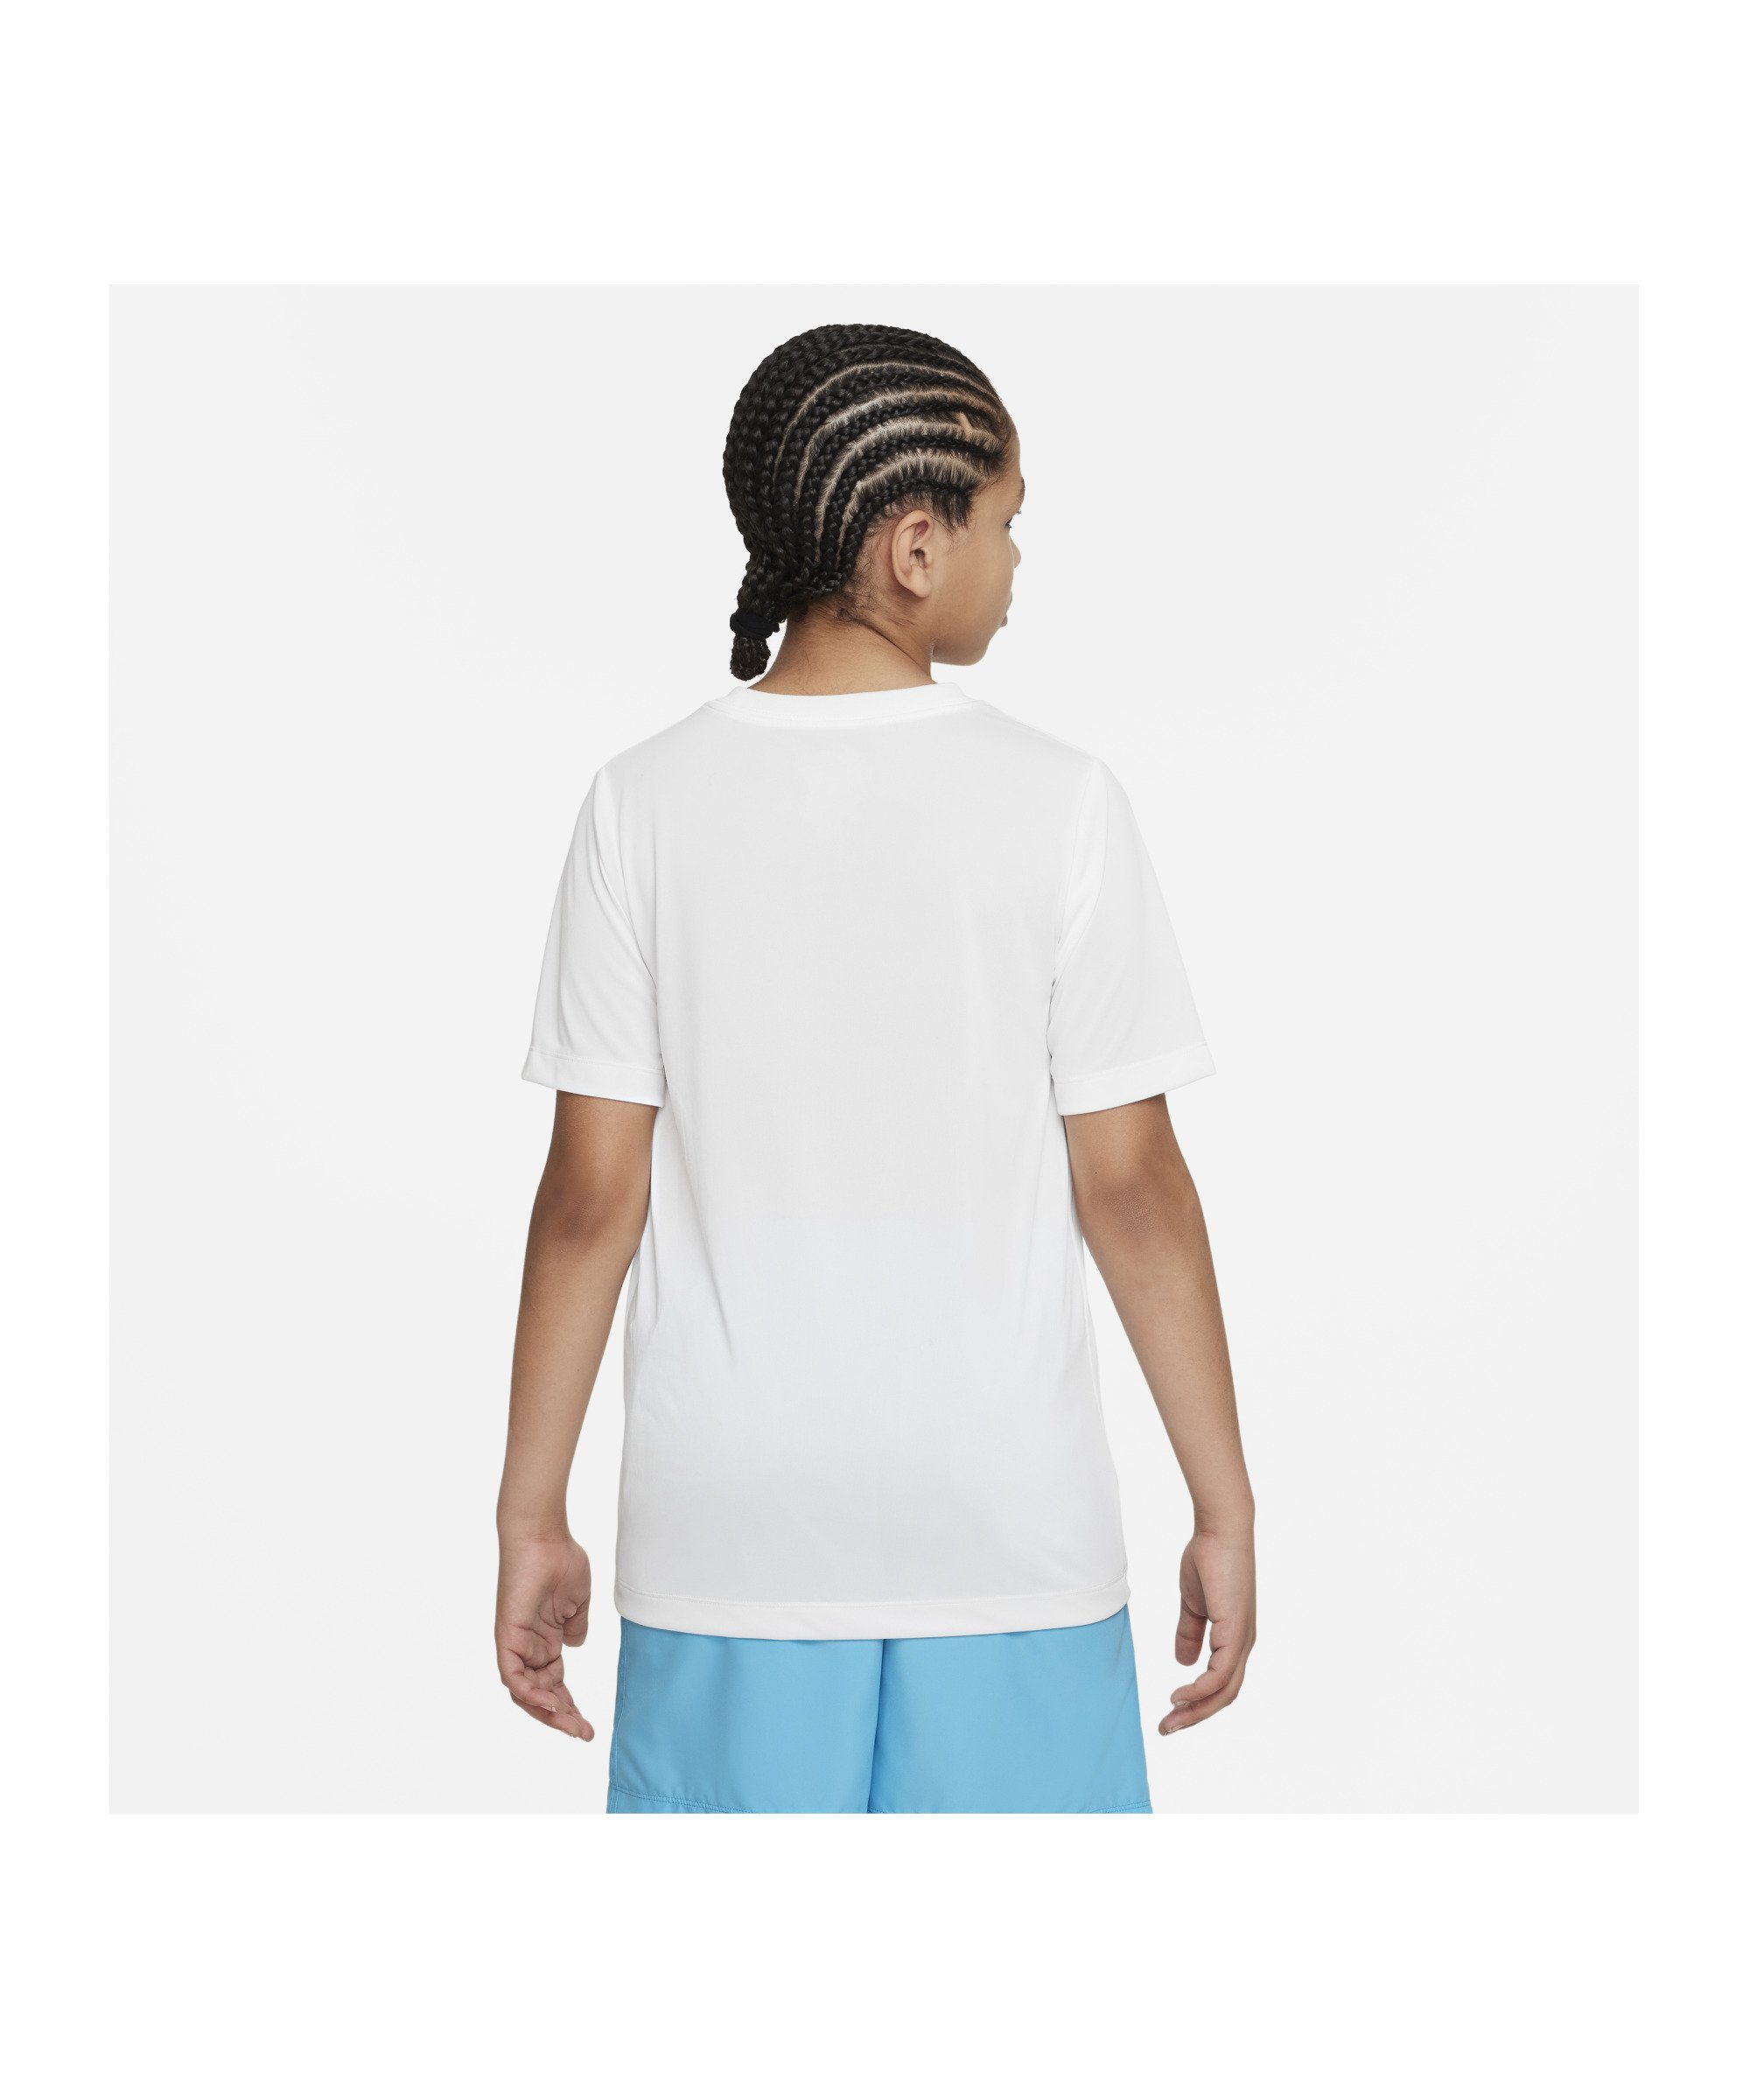 Training default T-Shirt Kids weiss Nike Laufshirt